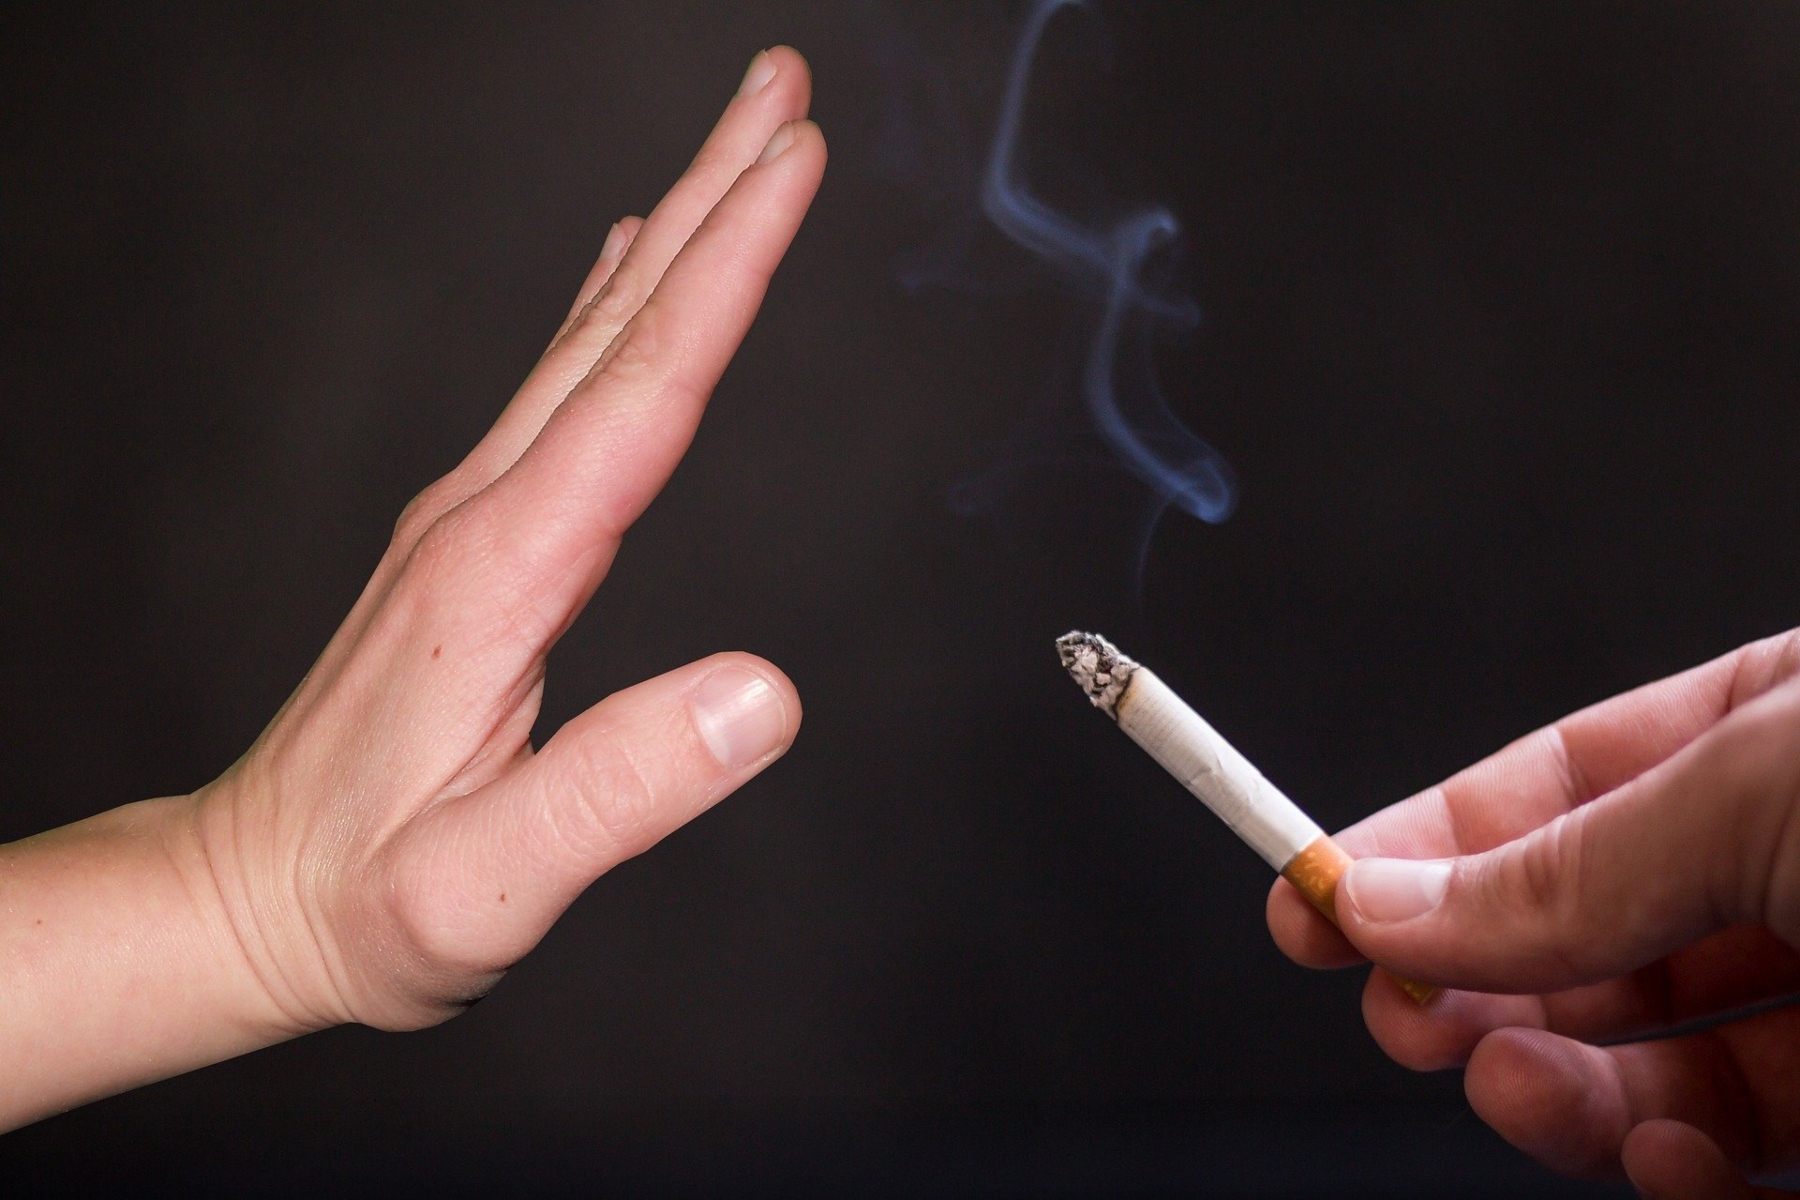 Αυτοκόλλητα νικοτίνης: Ποια είναι τα καλύτερα επιθέματα που αντικαθιστούν το κάπνισμα;